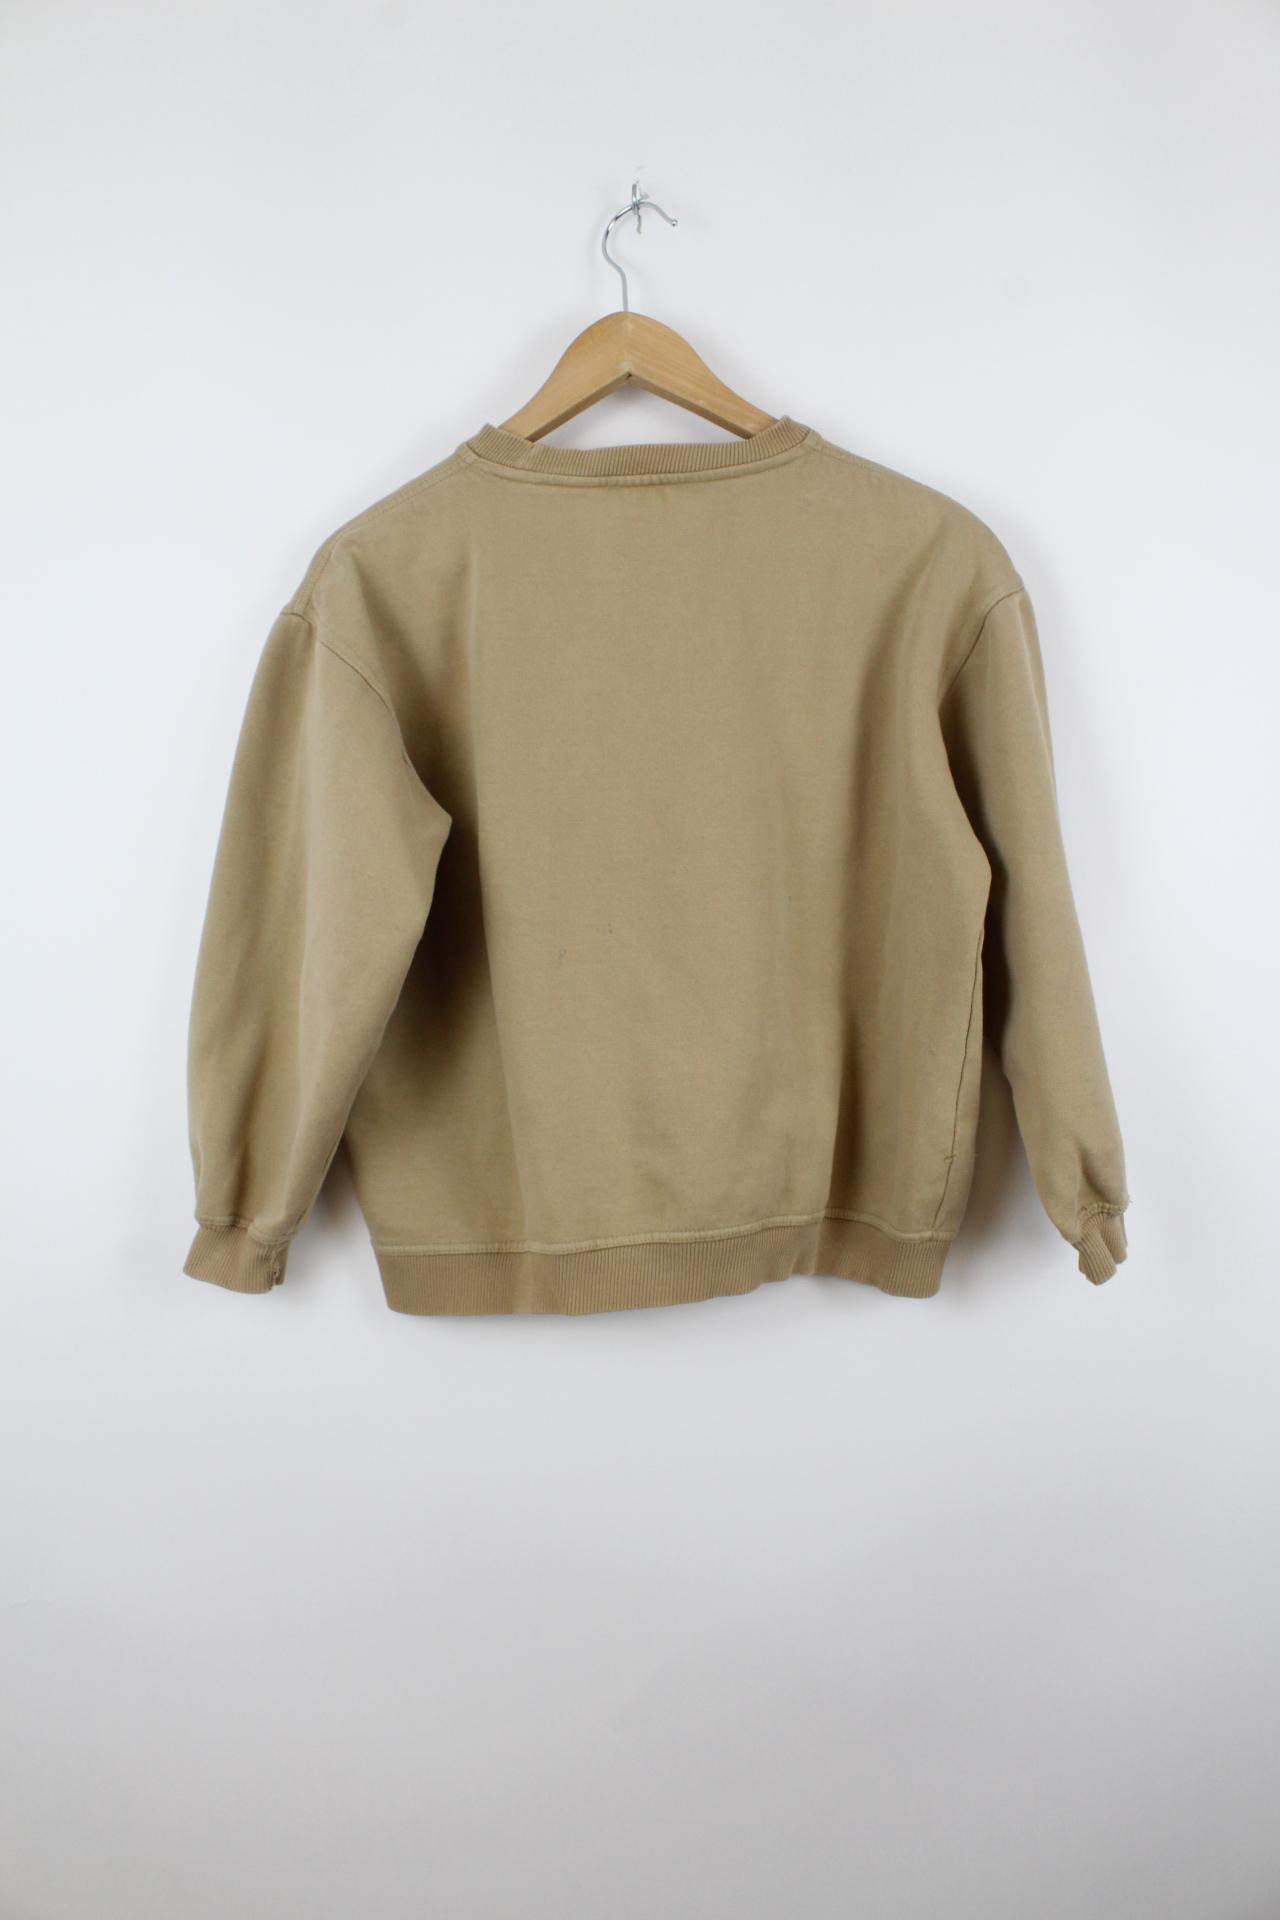 Vintage Fila Sweater Beige - S